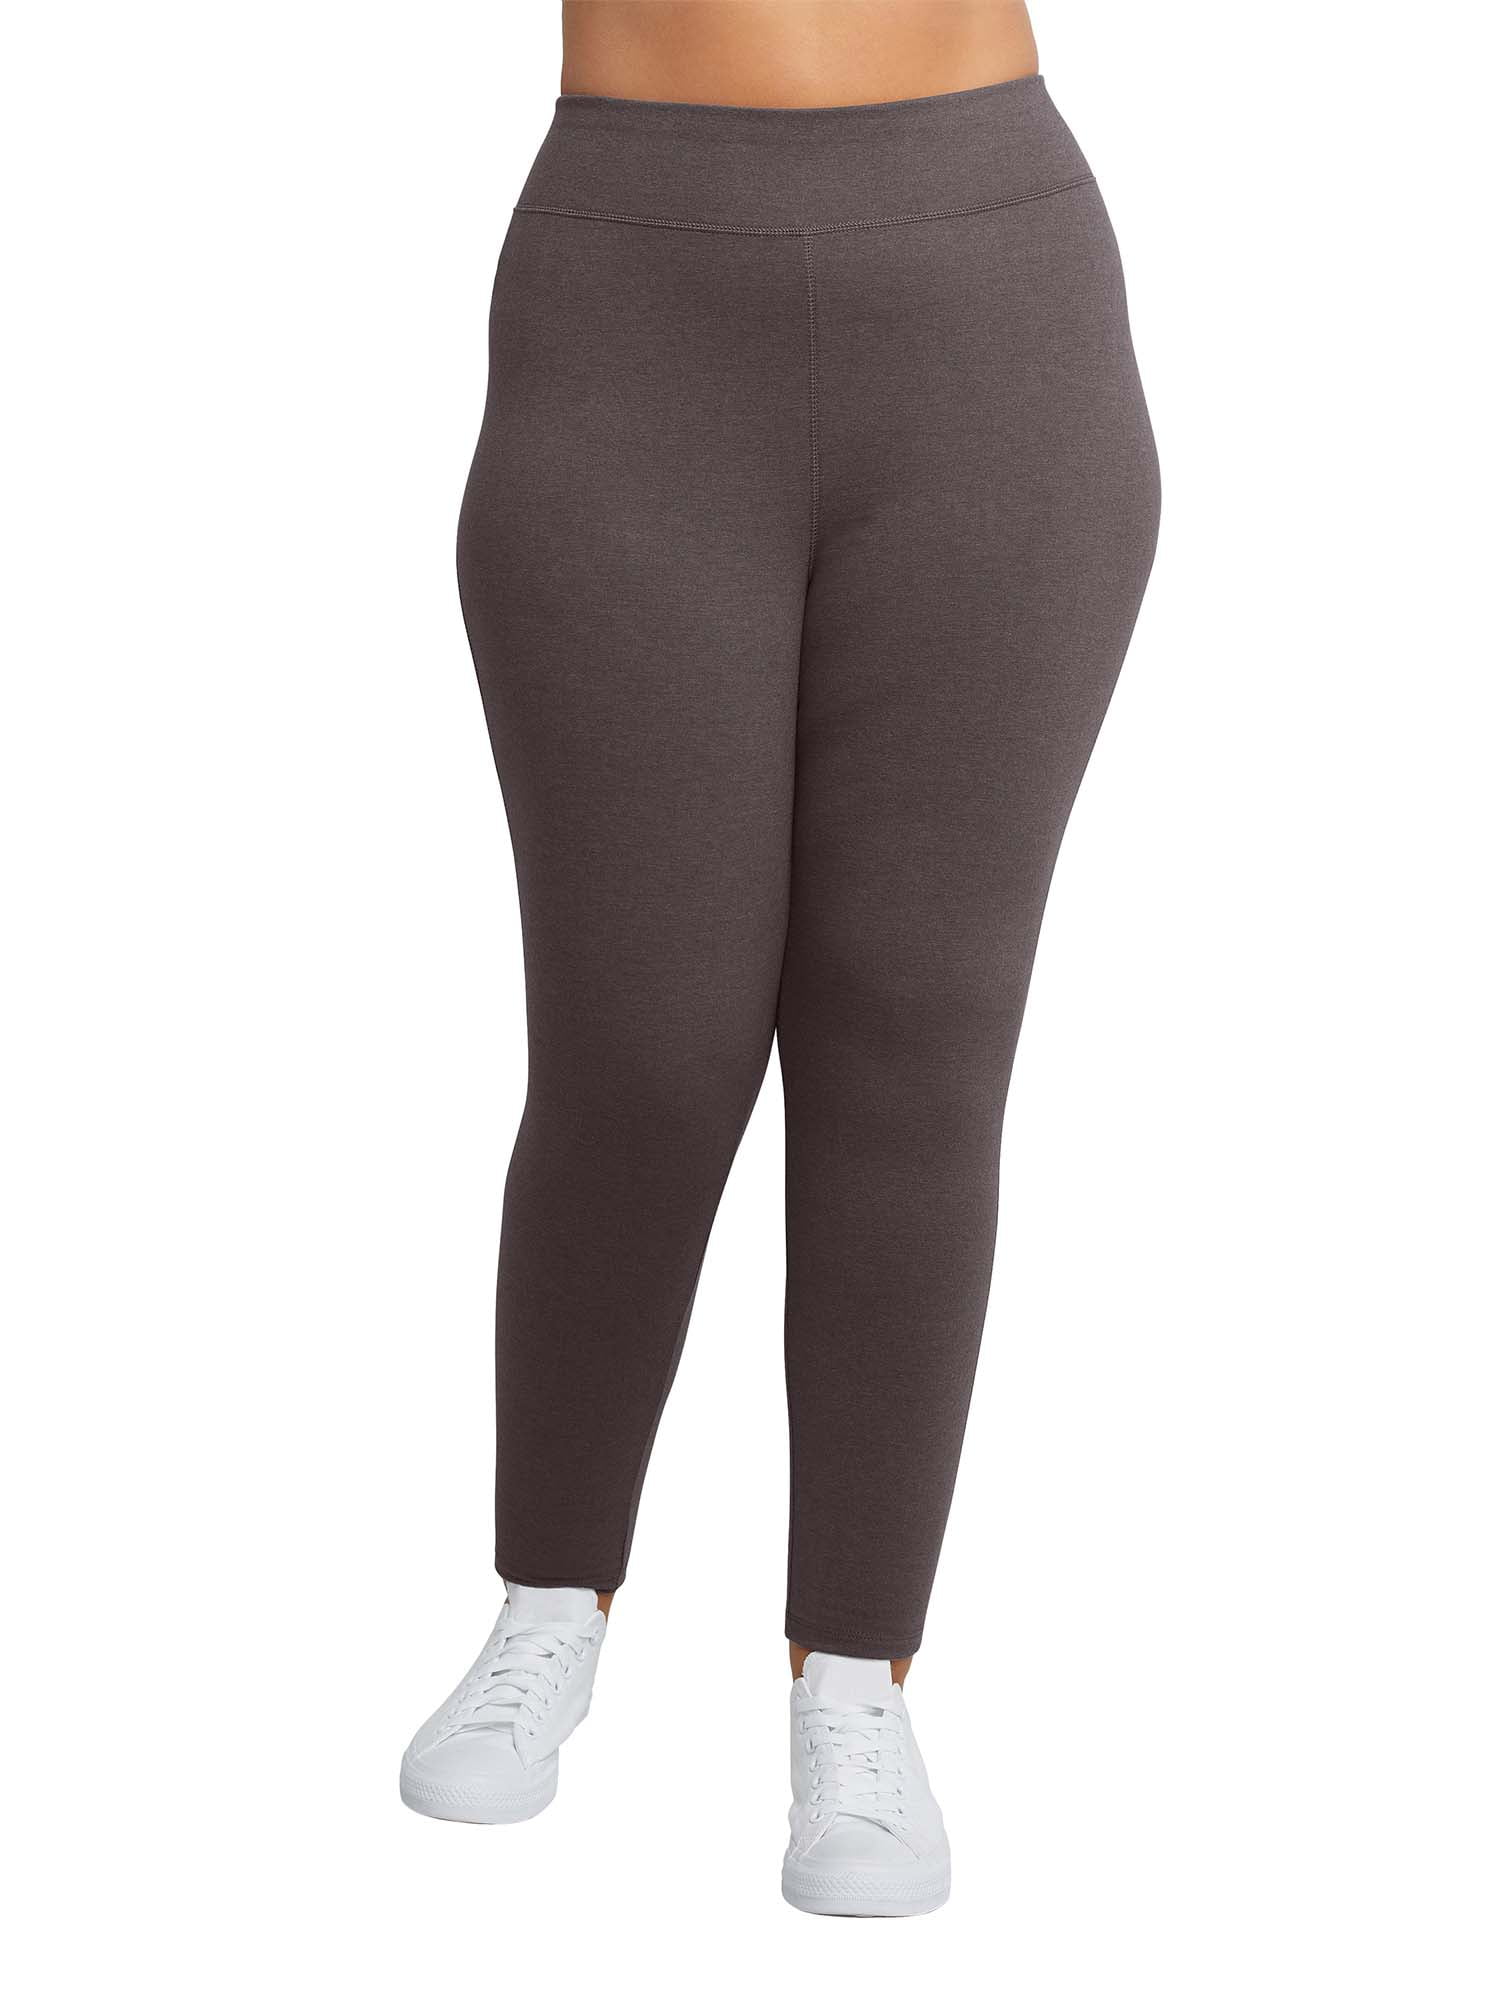 Samenpersen Is aan het huilen saai JMS by Hanes Women's Plus Size Stretch Jersey Legging - Walmart.com